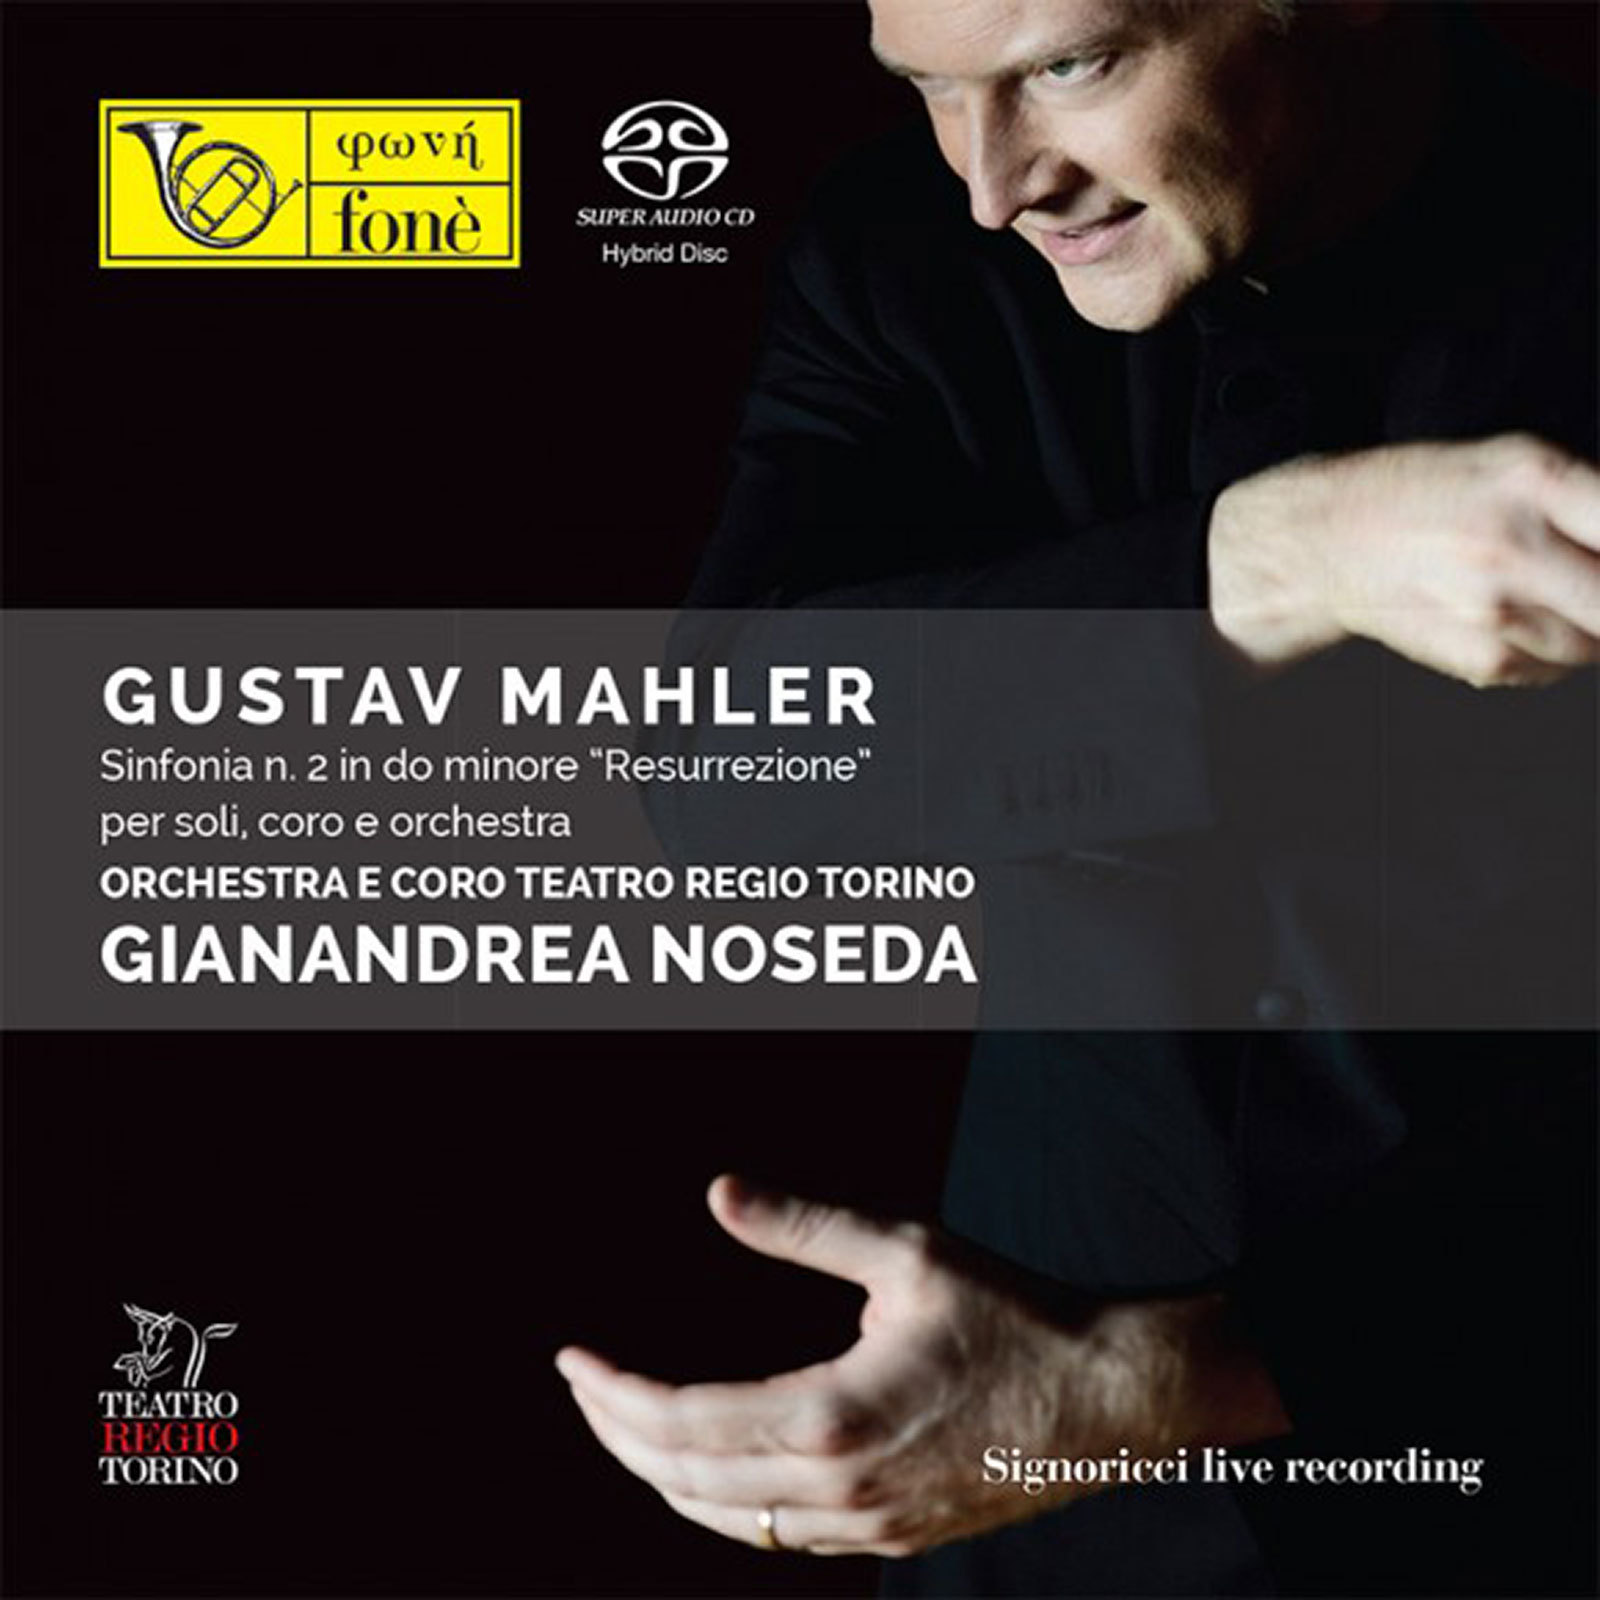 Gustav Mahler - Gianandrea Noseda